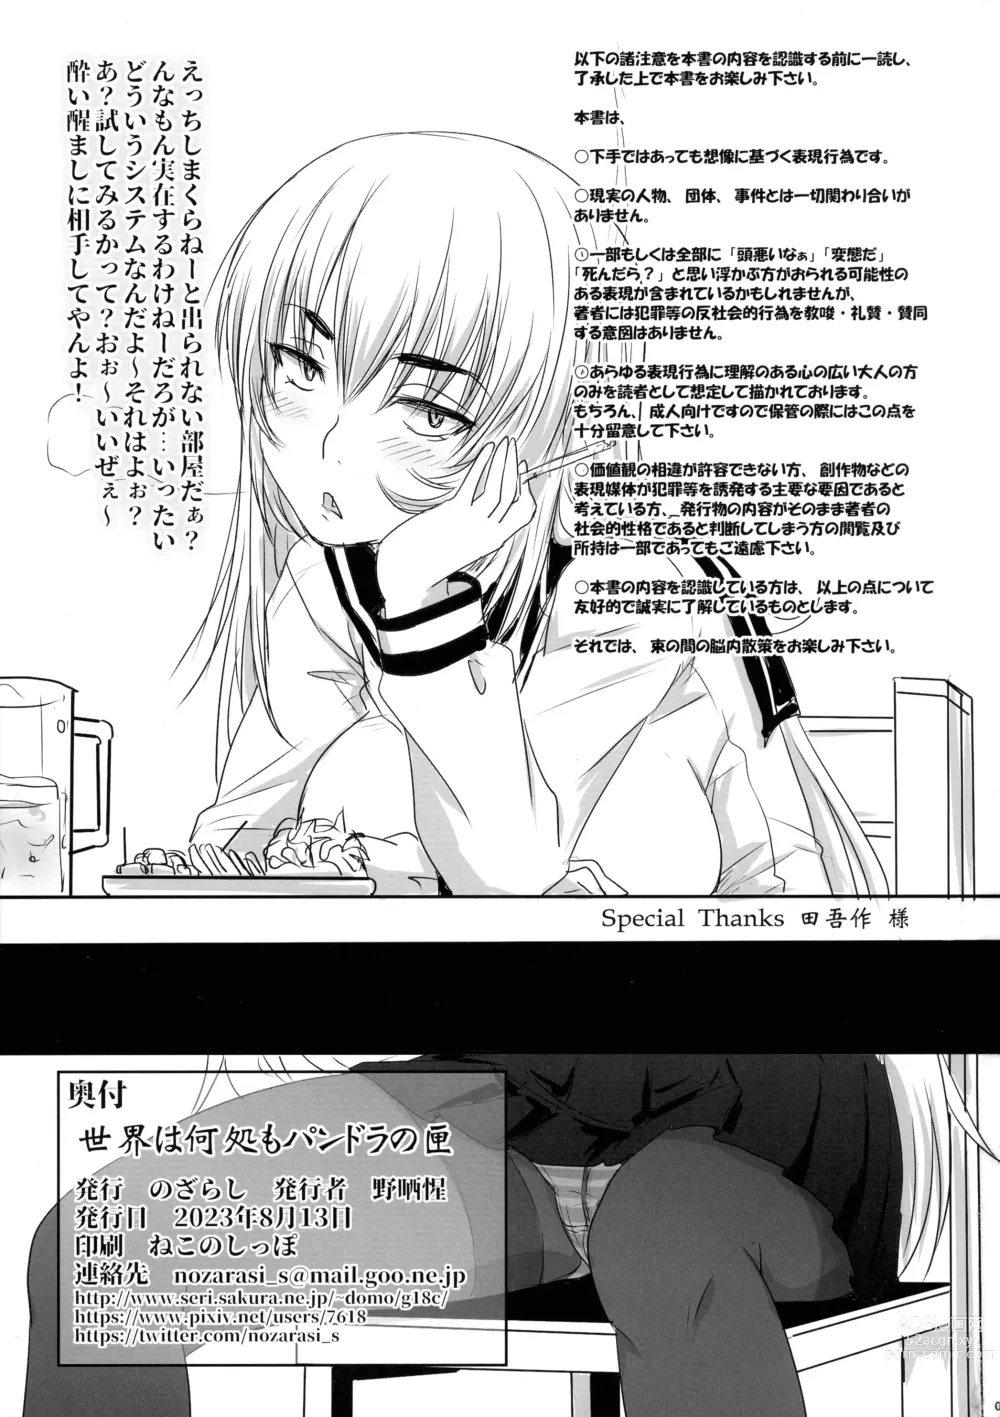 Page 3 of doujinshi Sekai wa Doko mo Pandora no Hako